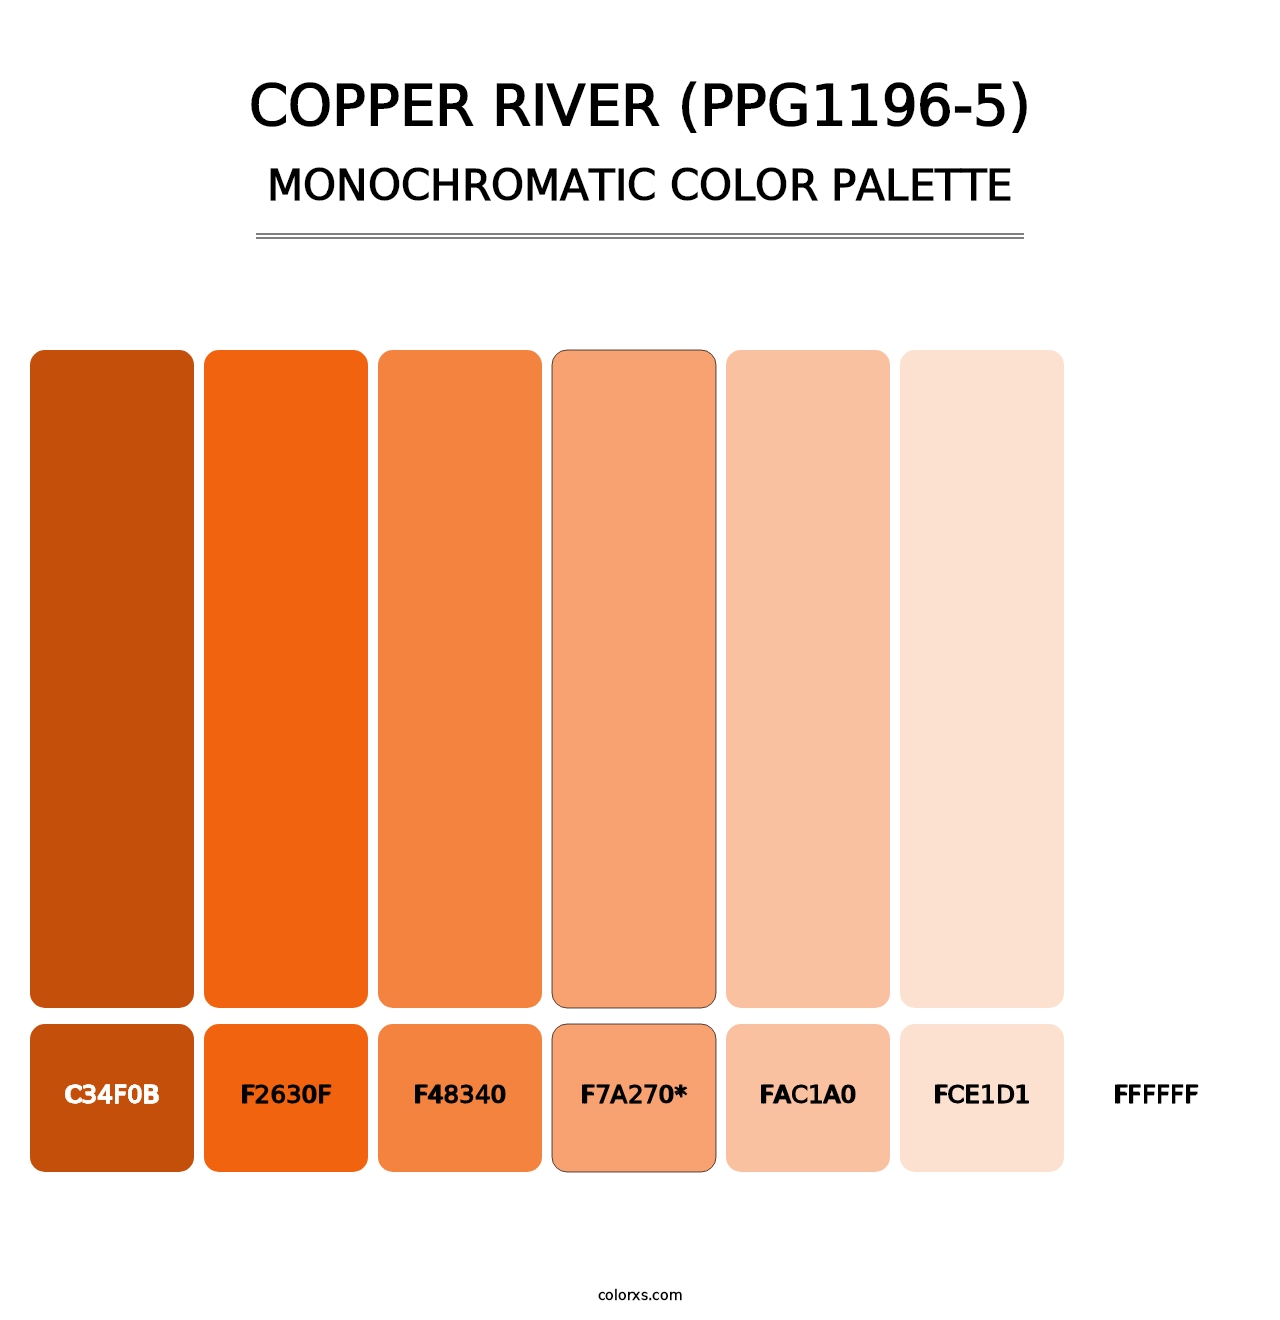 Copper River (PPG1196-5) - Monochromatic Color Palette